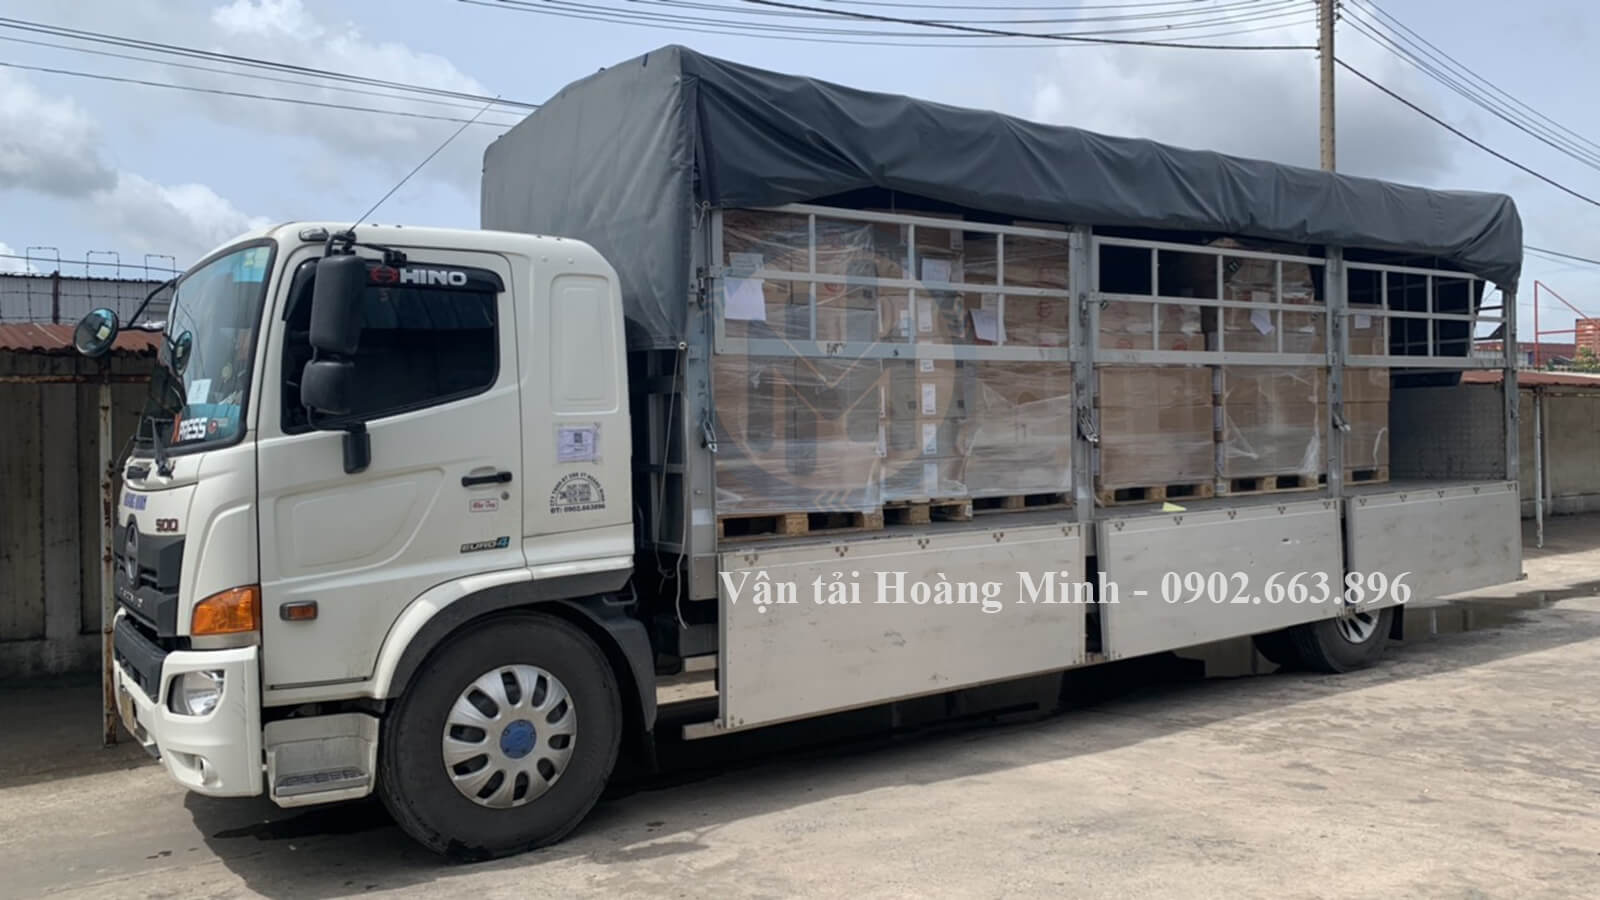 Cách thức đặt thuê xe tải chở hàng huyện Bình Chánh của Vận tải Hoàng Minh